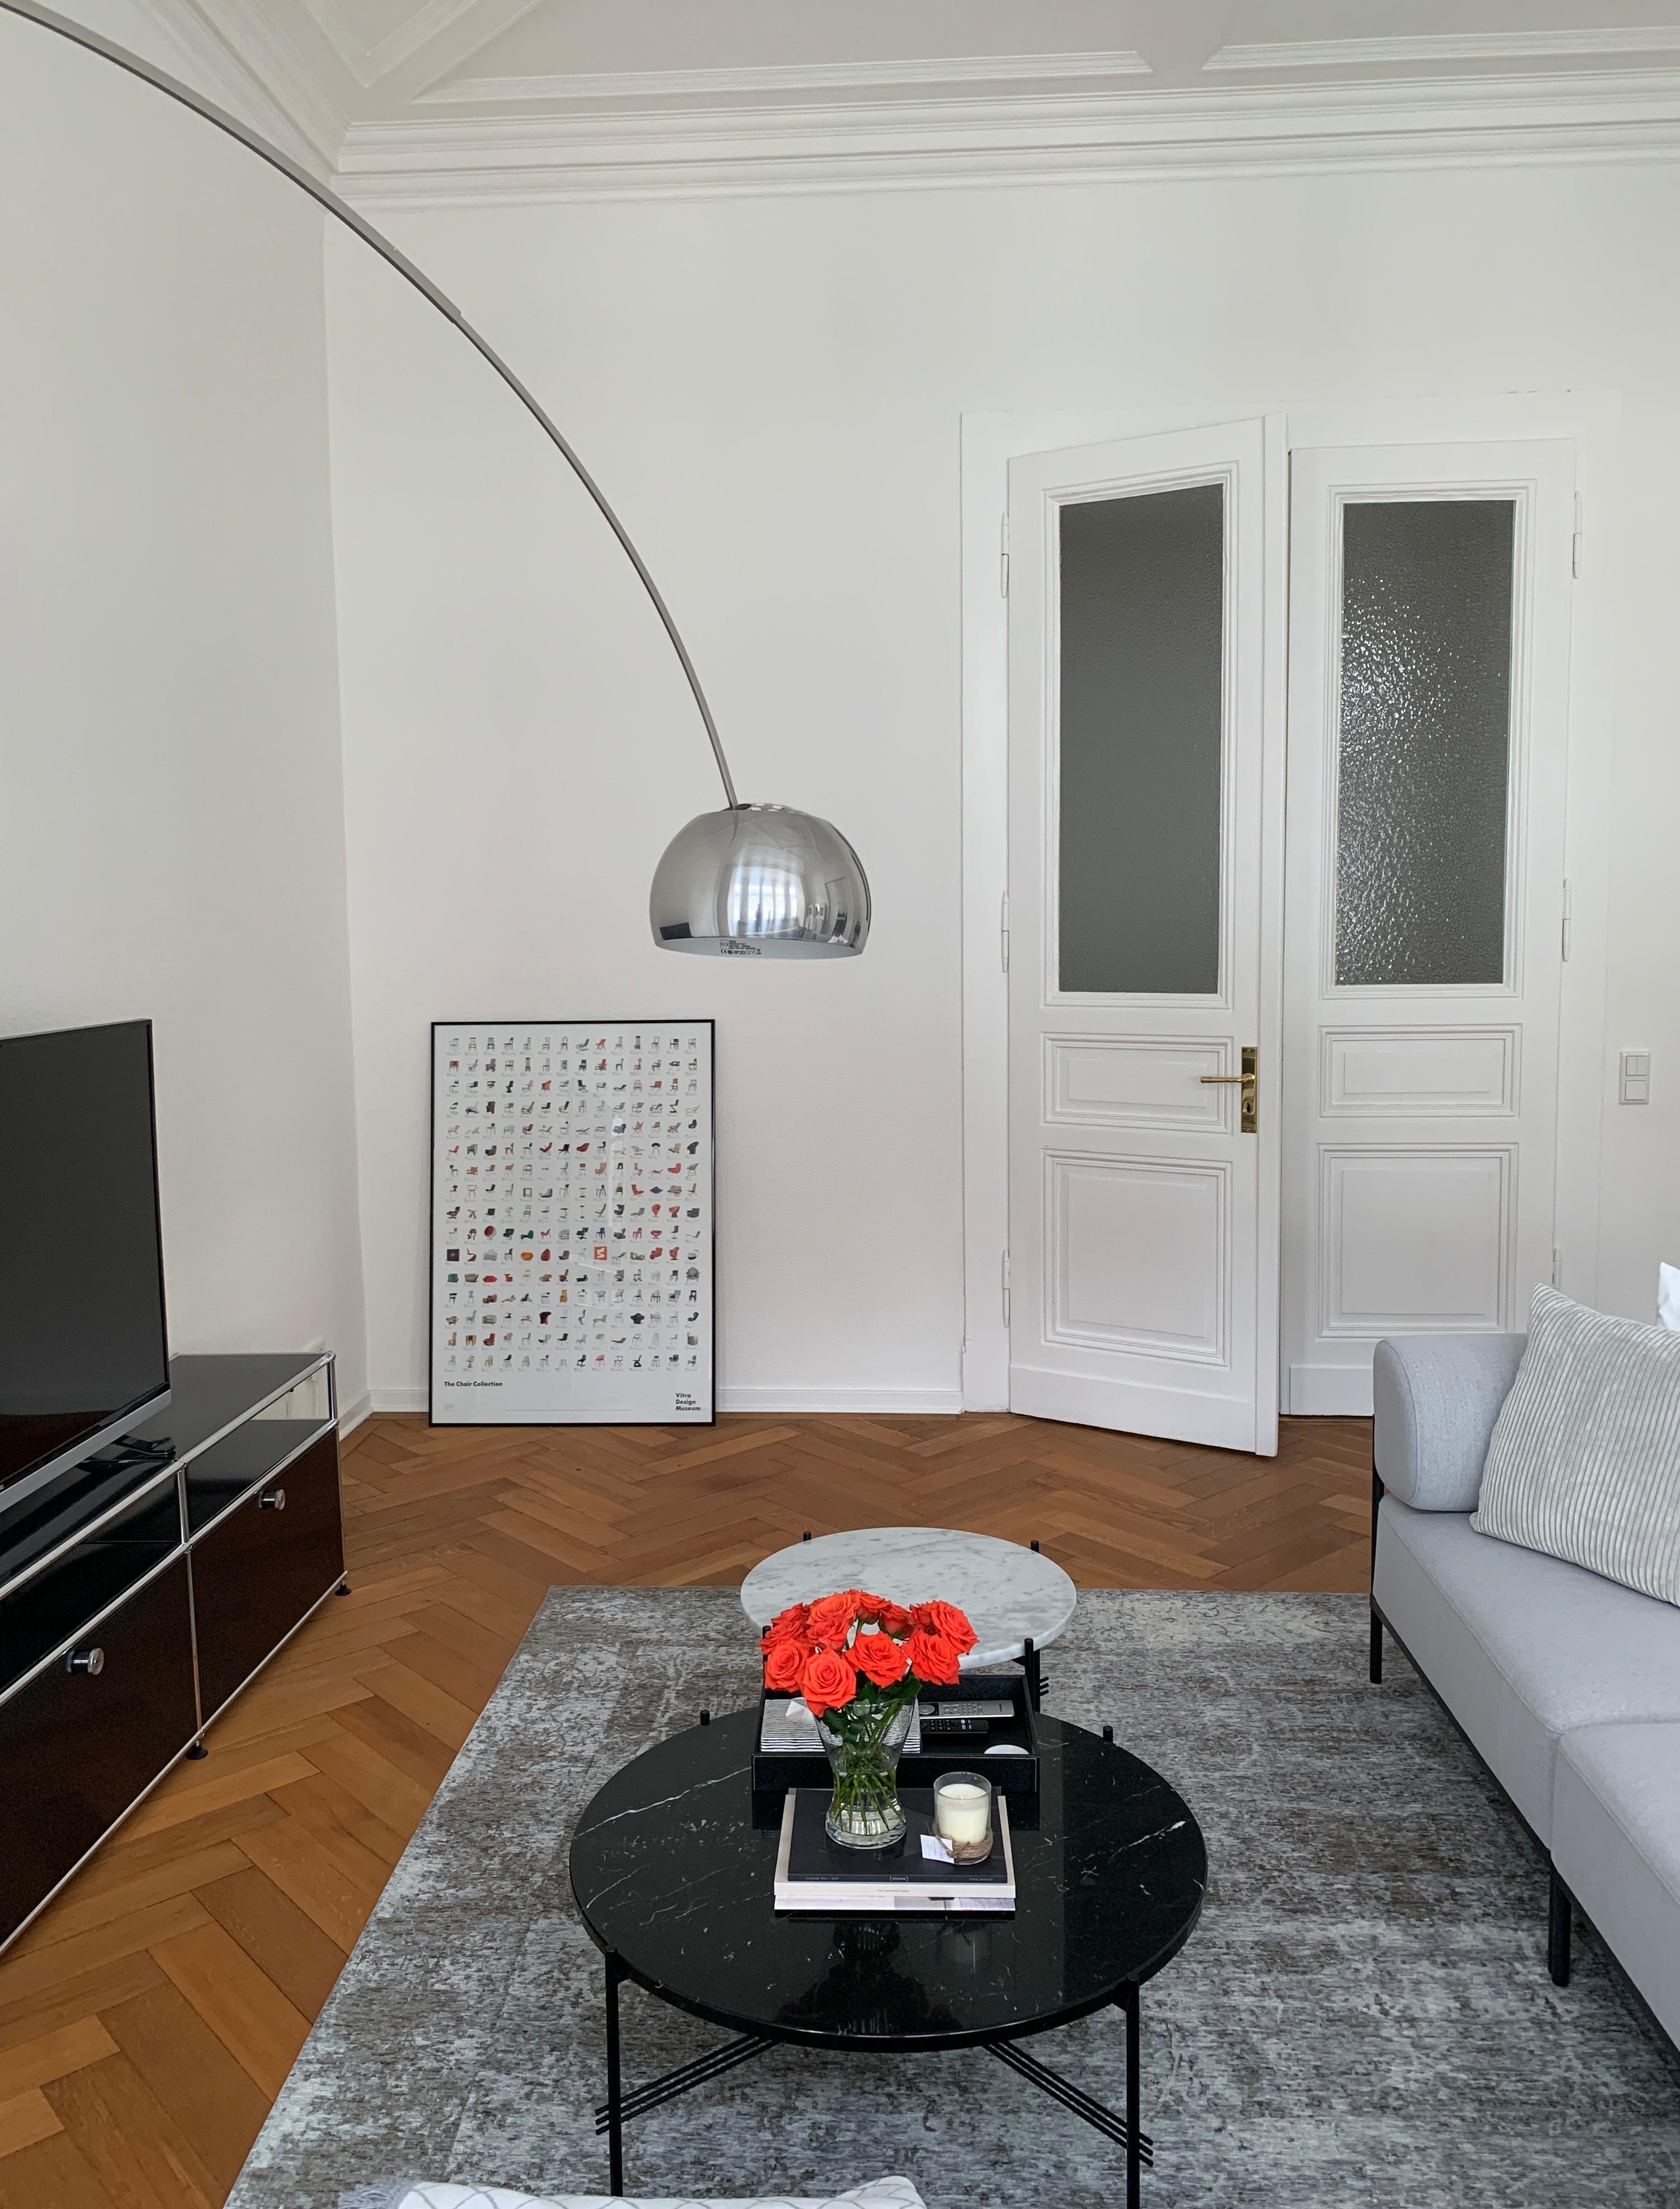 Farbtupfer im Wohnzimmer 😌
#neuhier #altbauliebe #minimalisticinterior #einrichtungsberatung #interiorservices #altbaucharme #altbaurenovierung